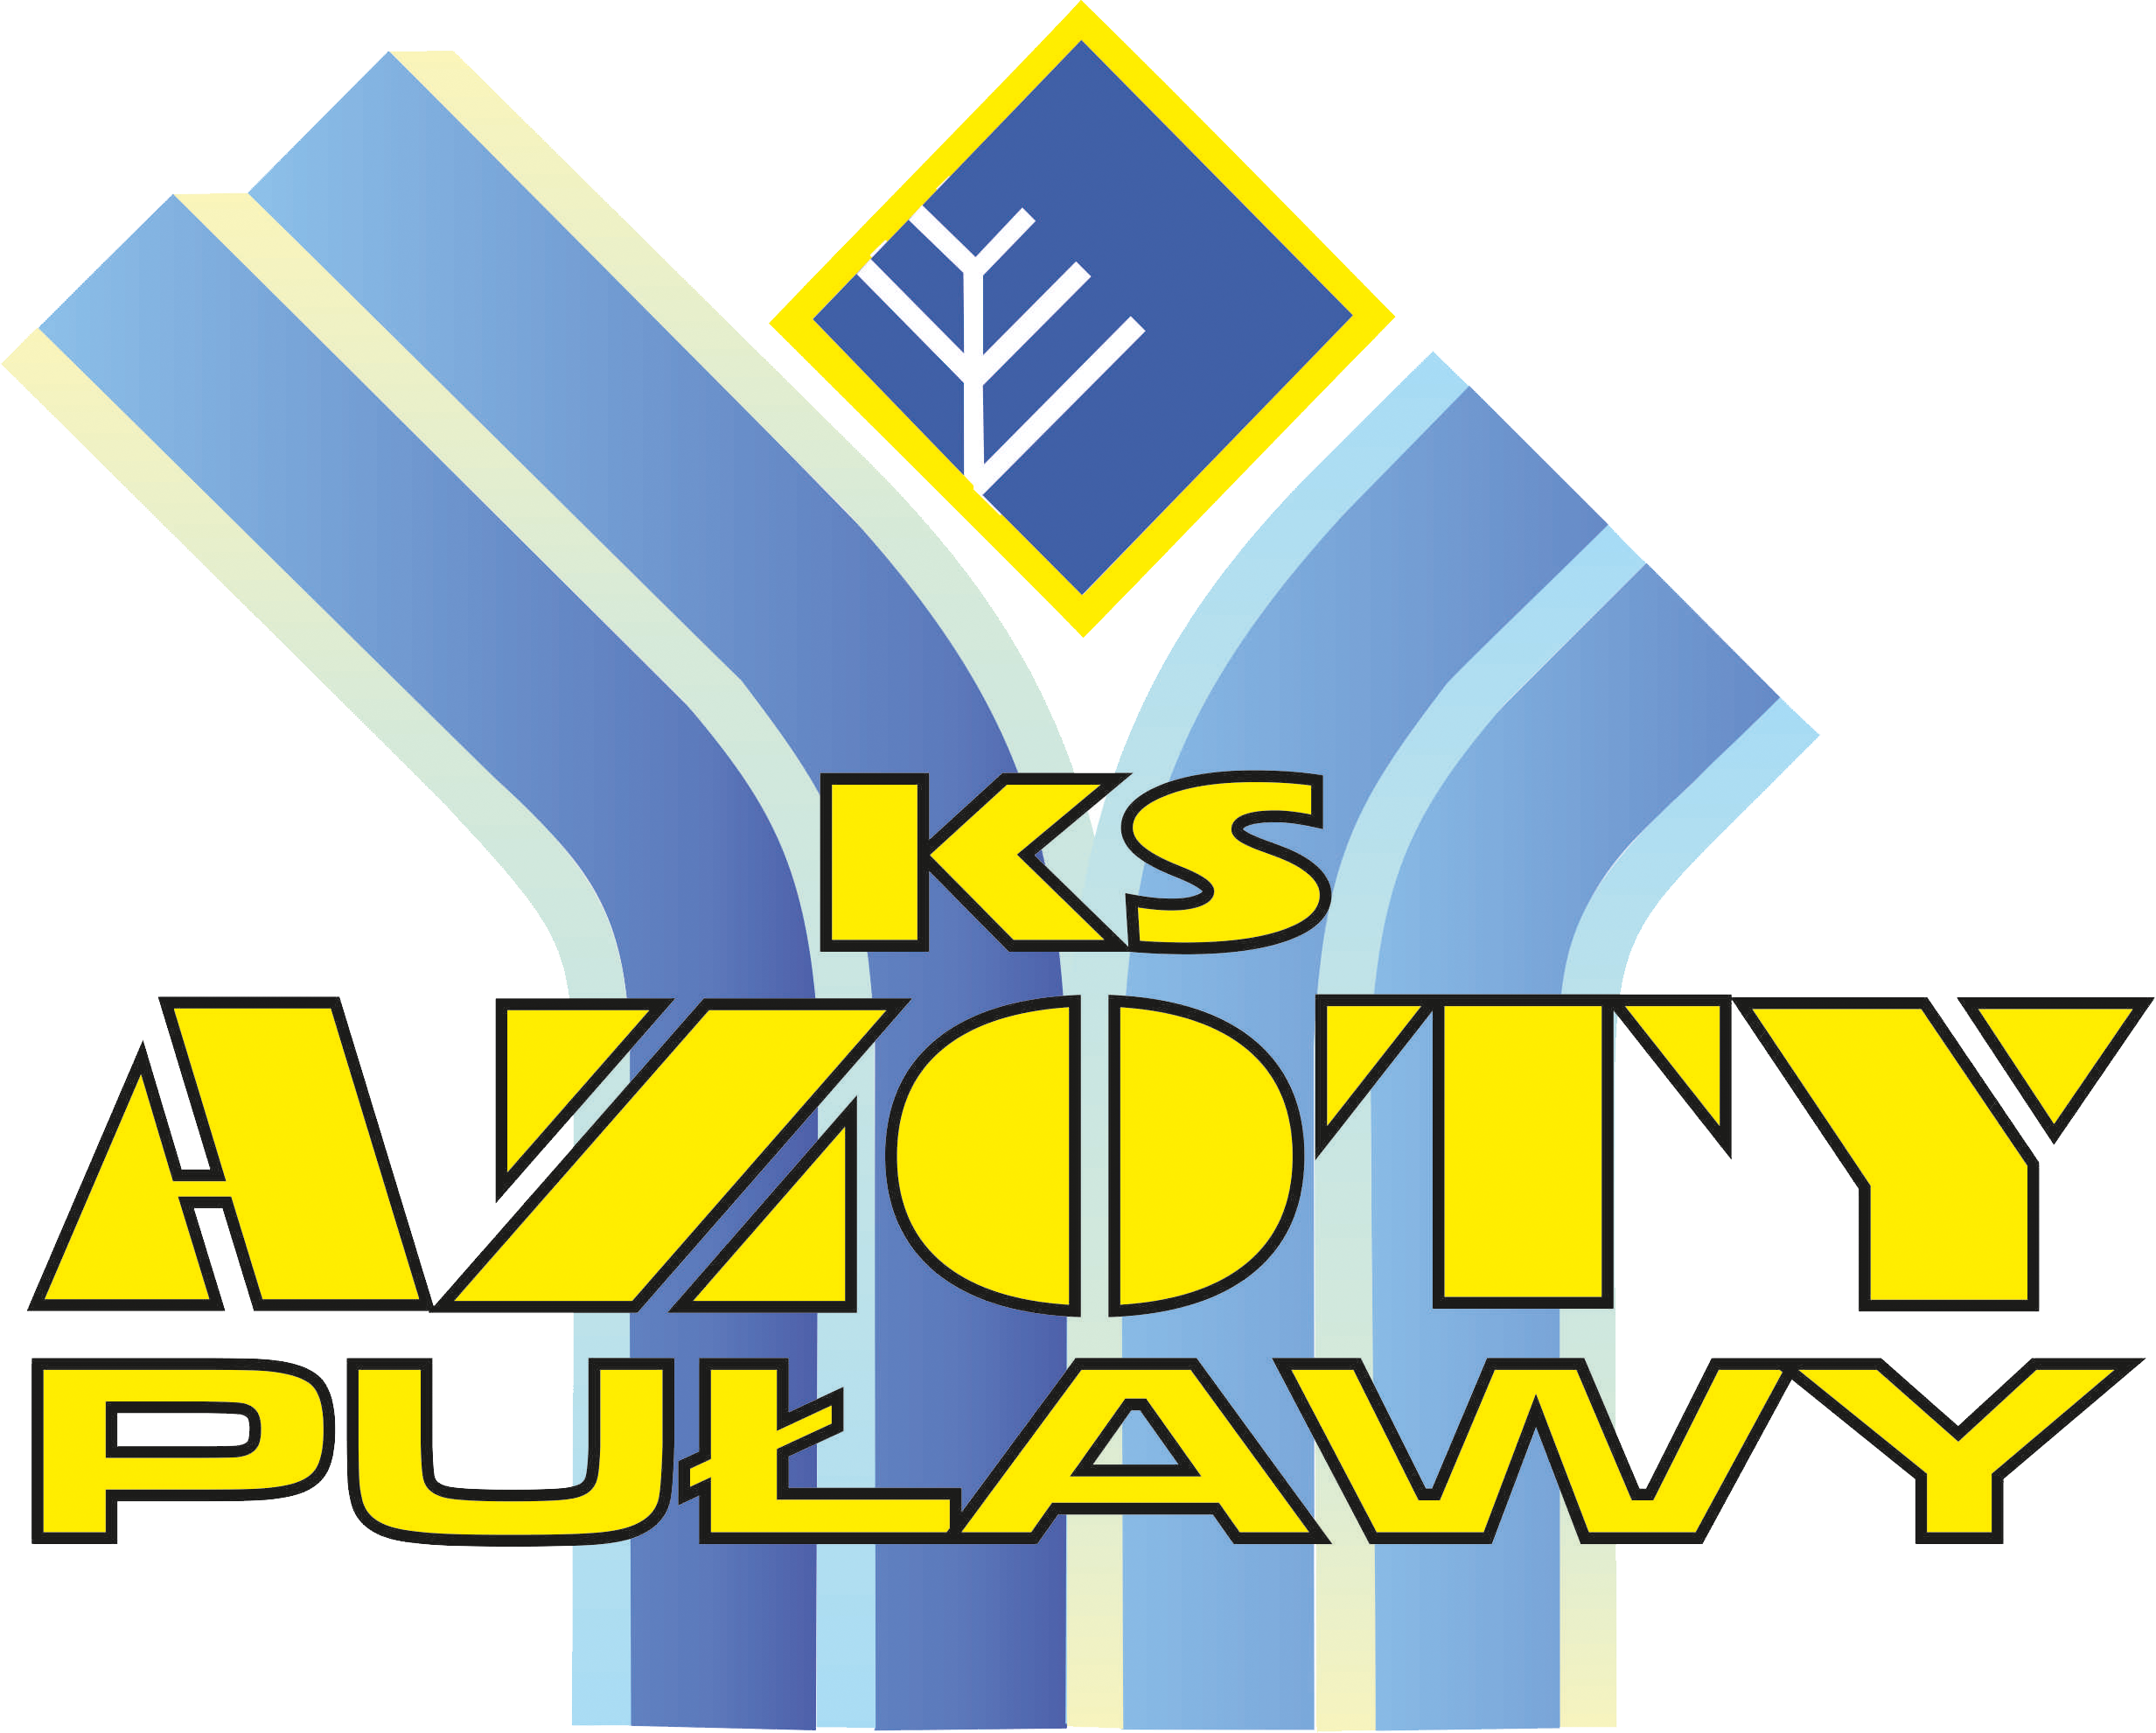 Azoty-Puławy